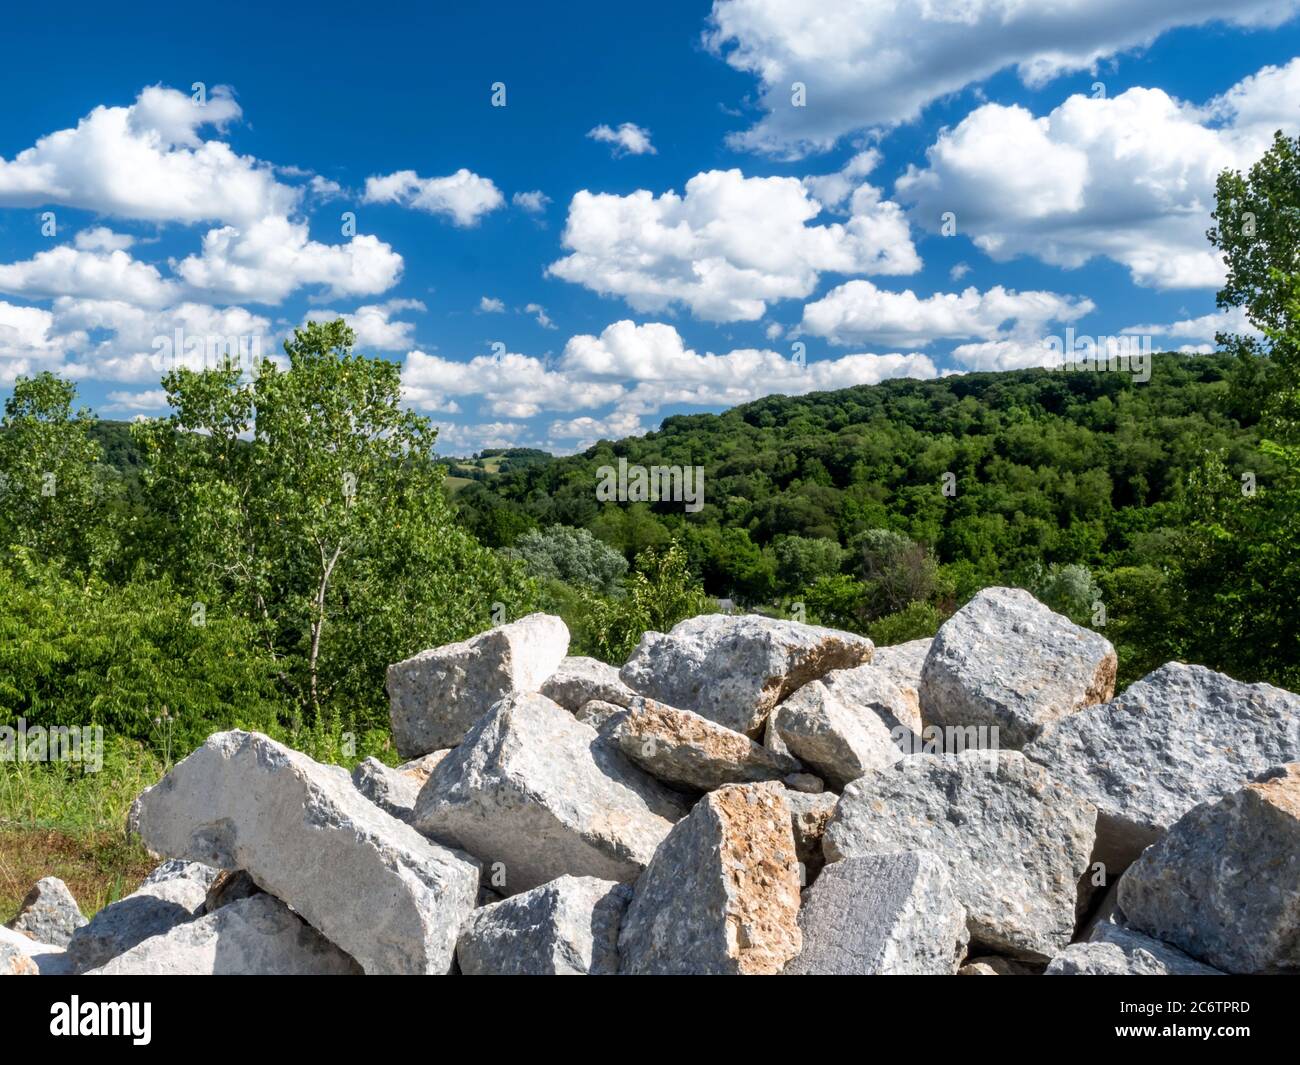 Paesaggio scena nella contea di Washington del sud-ovest della Pennsylvania vicino Pittsburgh con grandi massi accatastati in primo piano e alberi verdi con una v Foto Stock